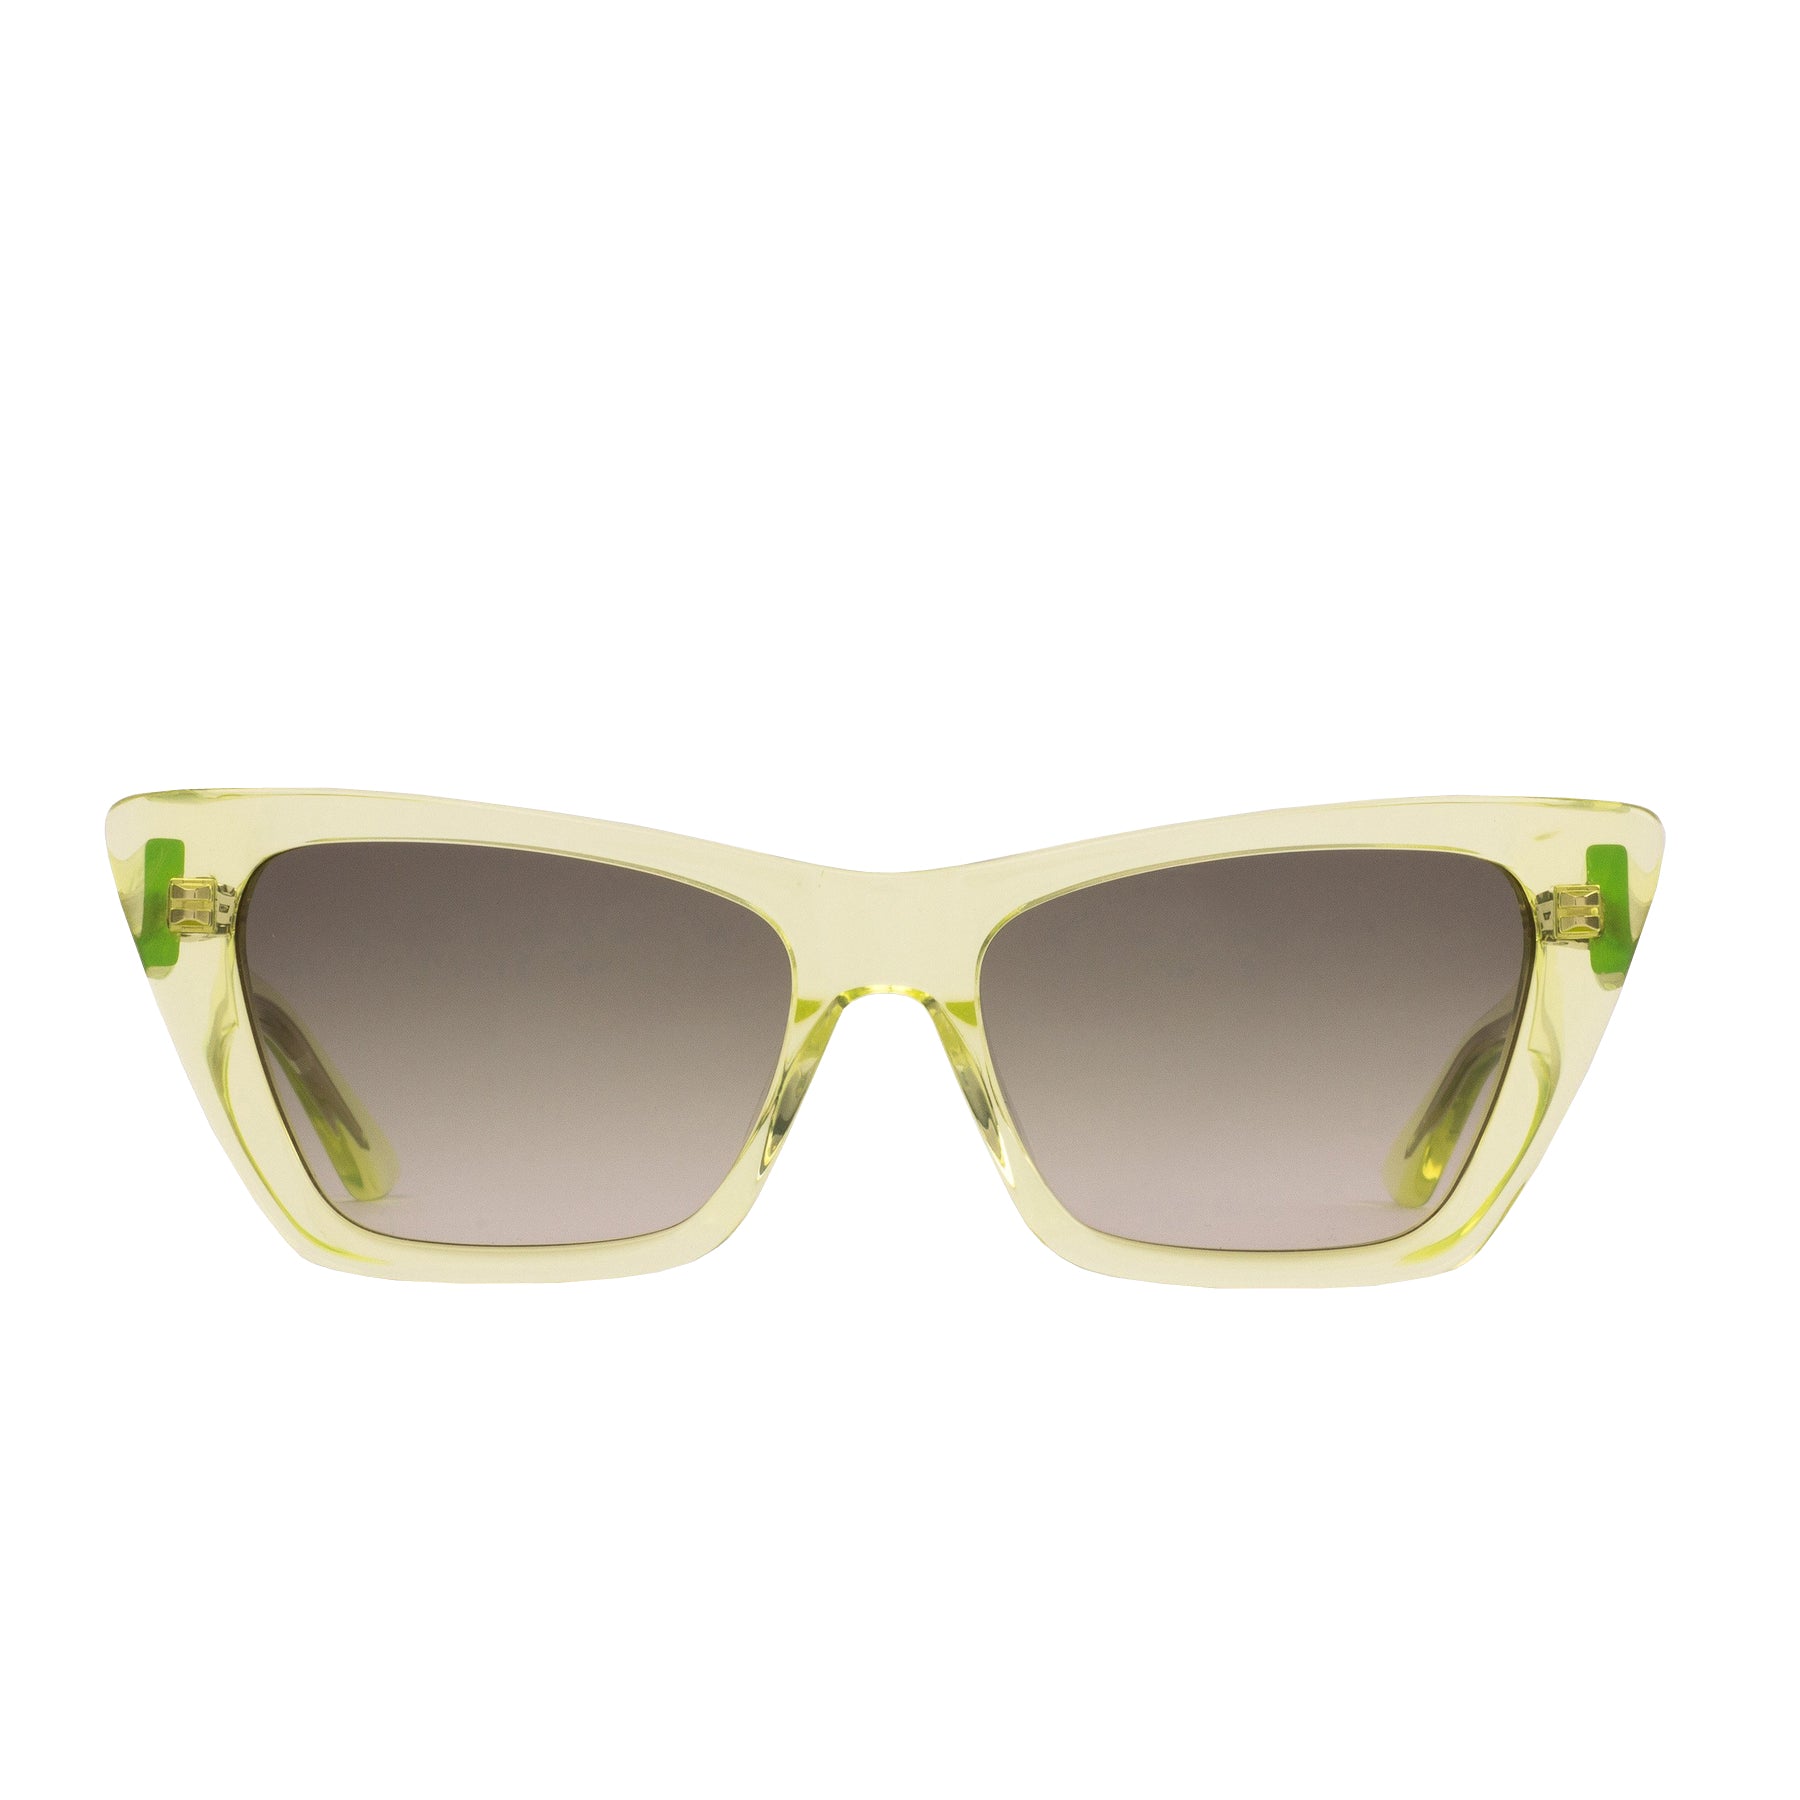 Sito Wonderland Sunglasses Limeade DuskGradient